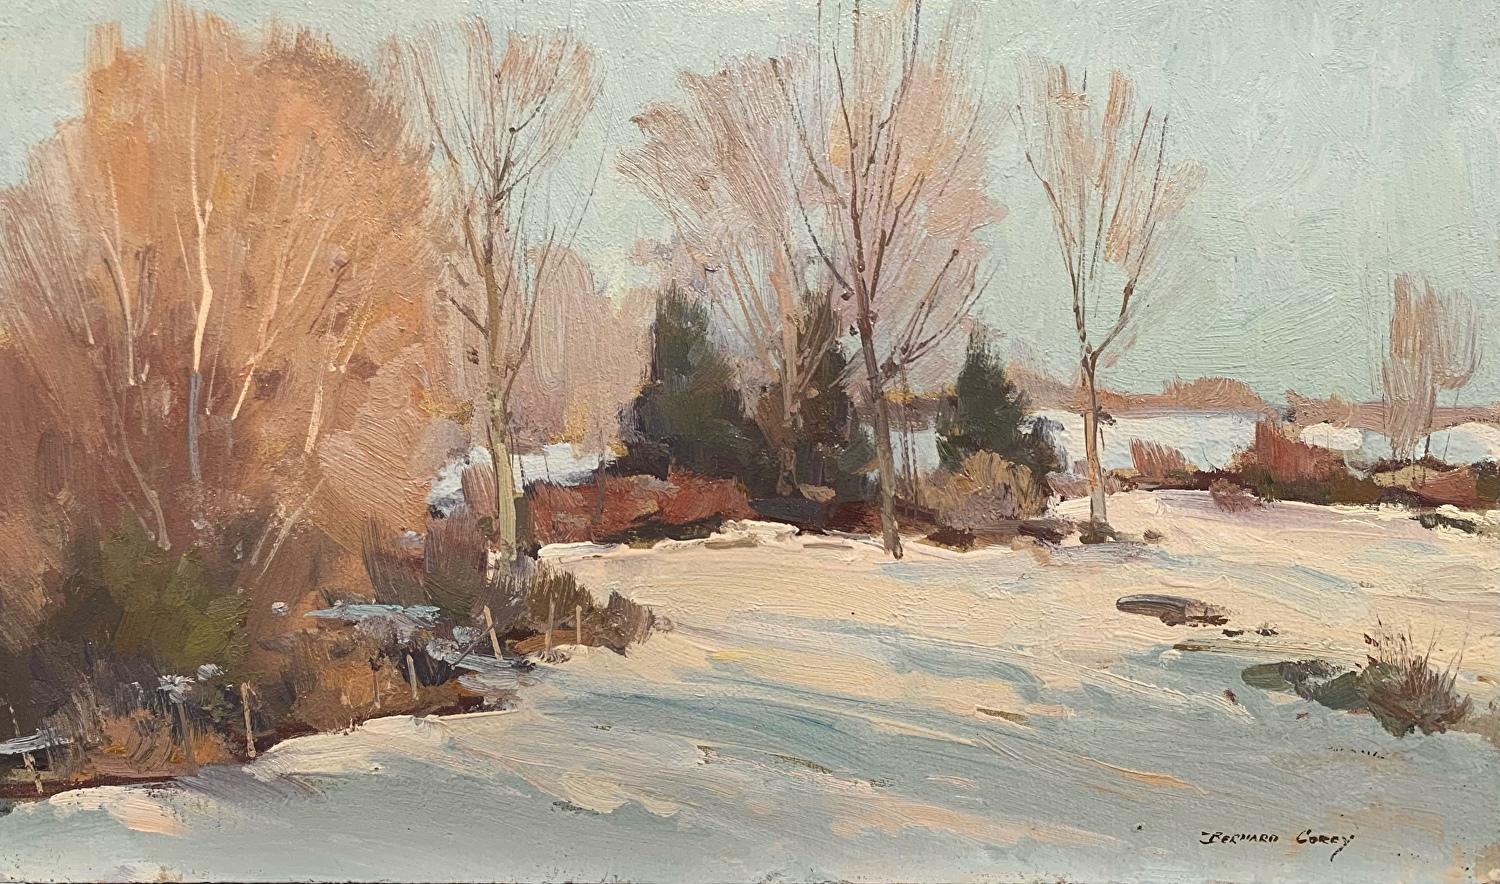 Bernard Corey Landscape Painting - "Winter Fields" Snowy Winter Landscape of a field 